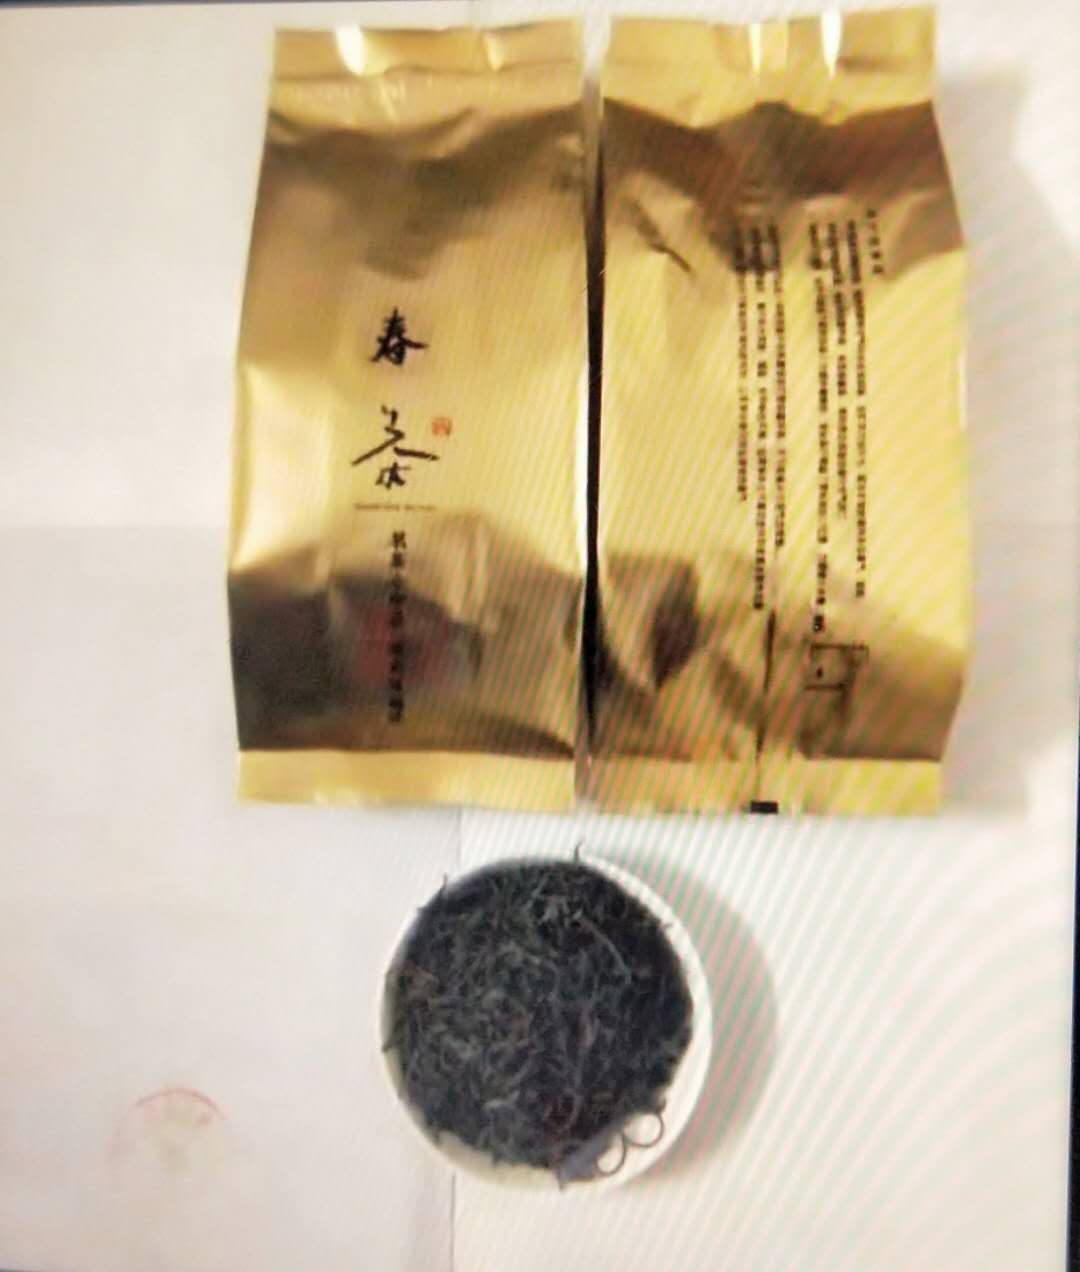 云南新春绿茶48元/袋(200克/袋)240元/箱(10袋/箱)